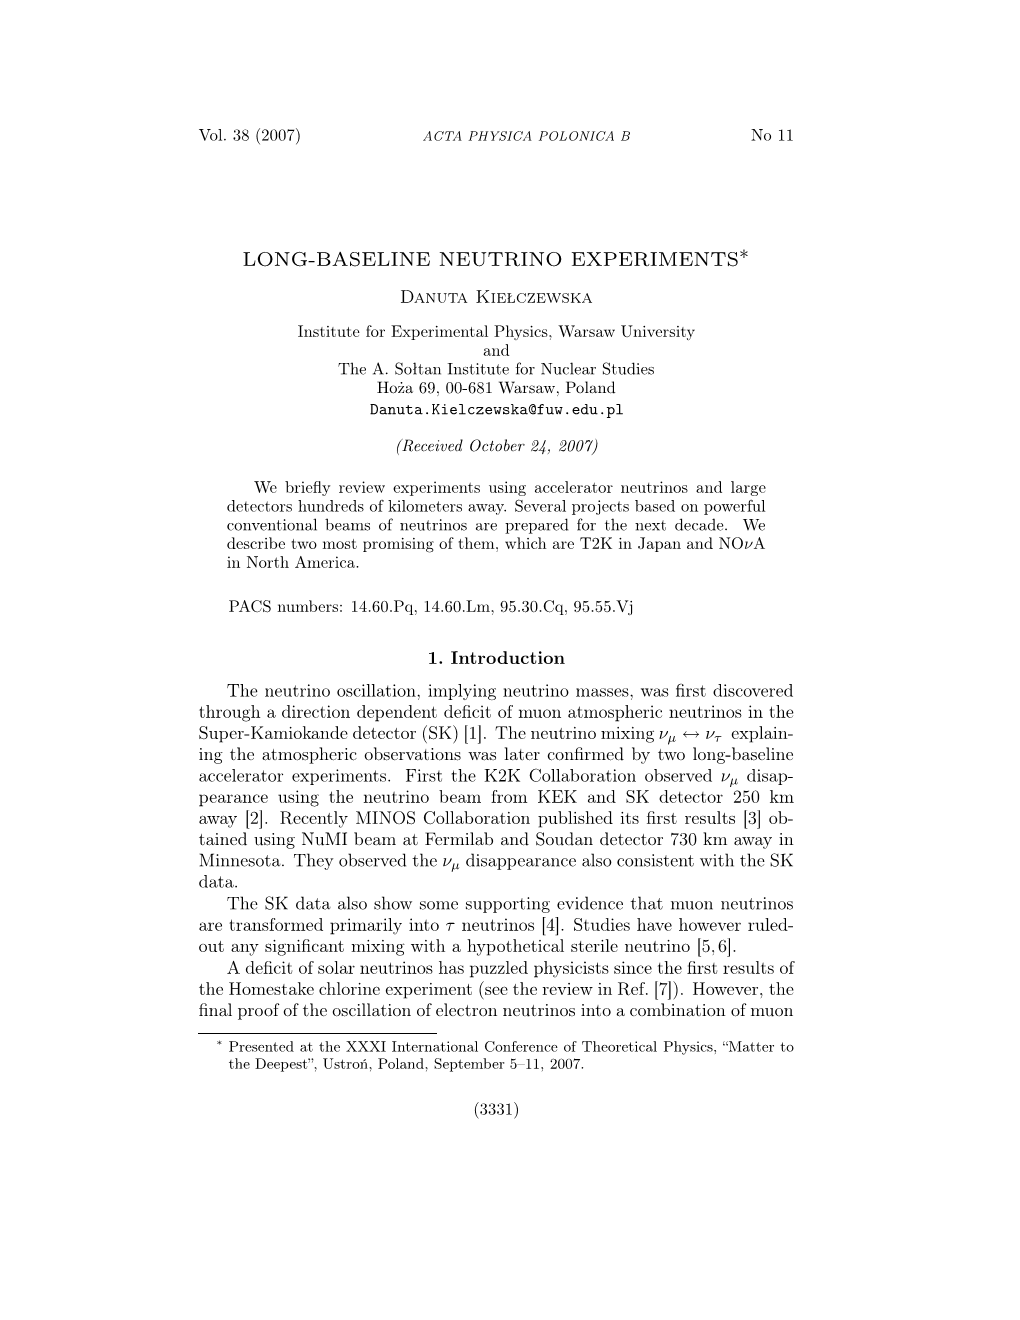 Long-Baseline Neutrino Experiments∗